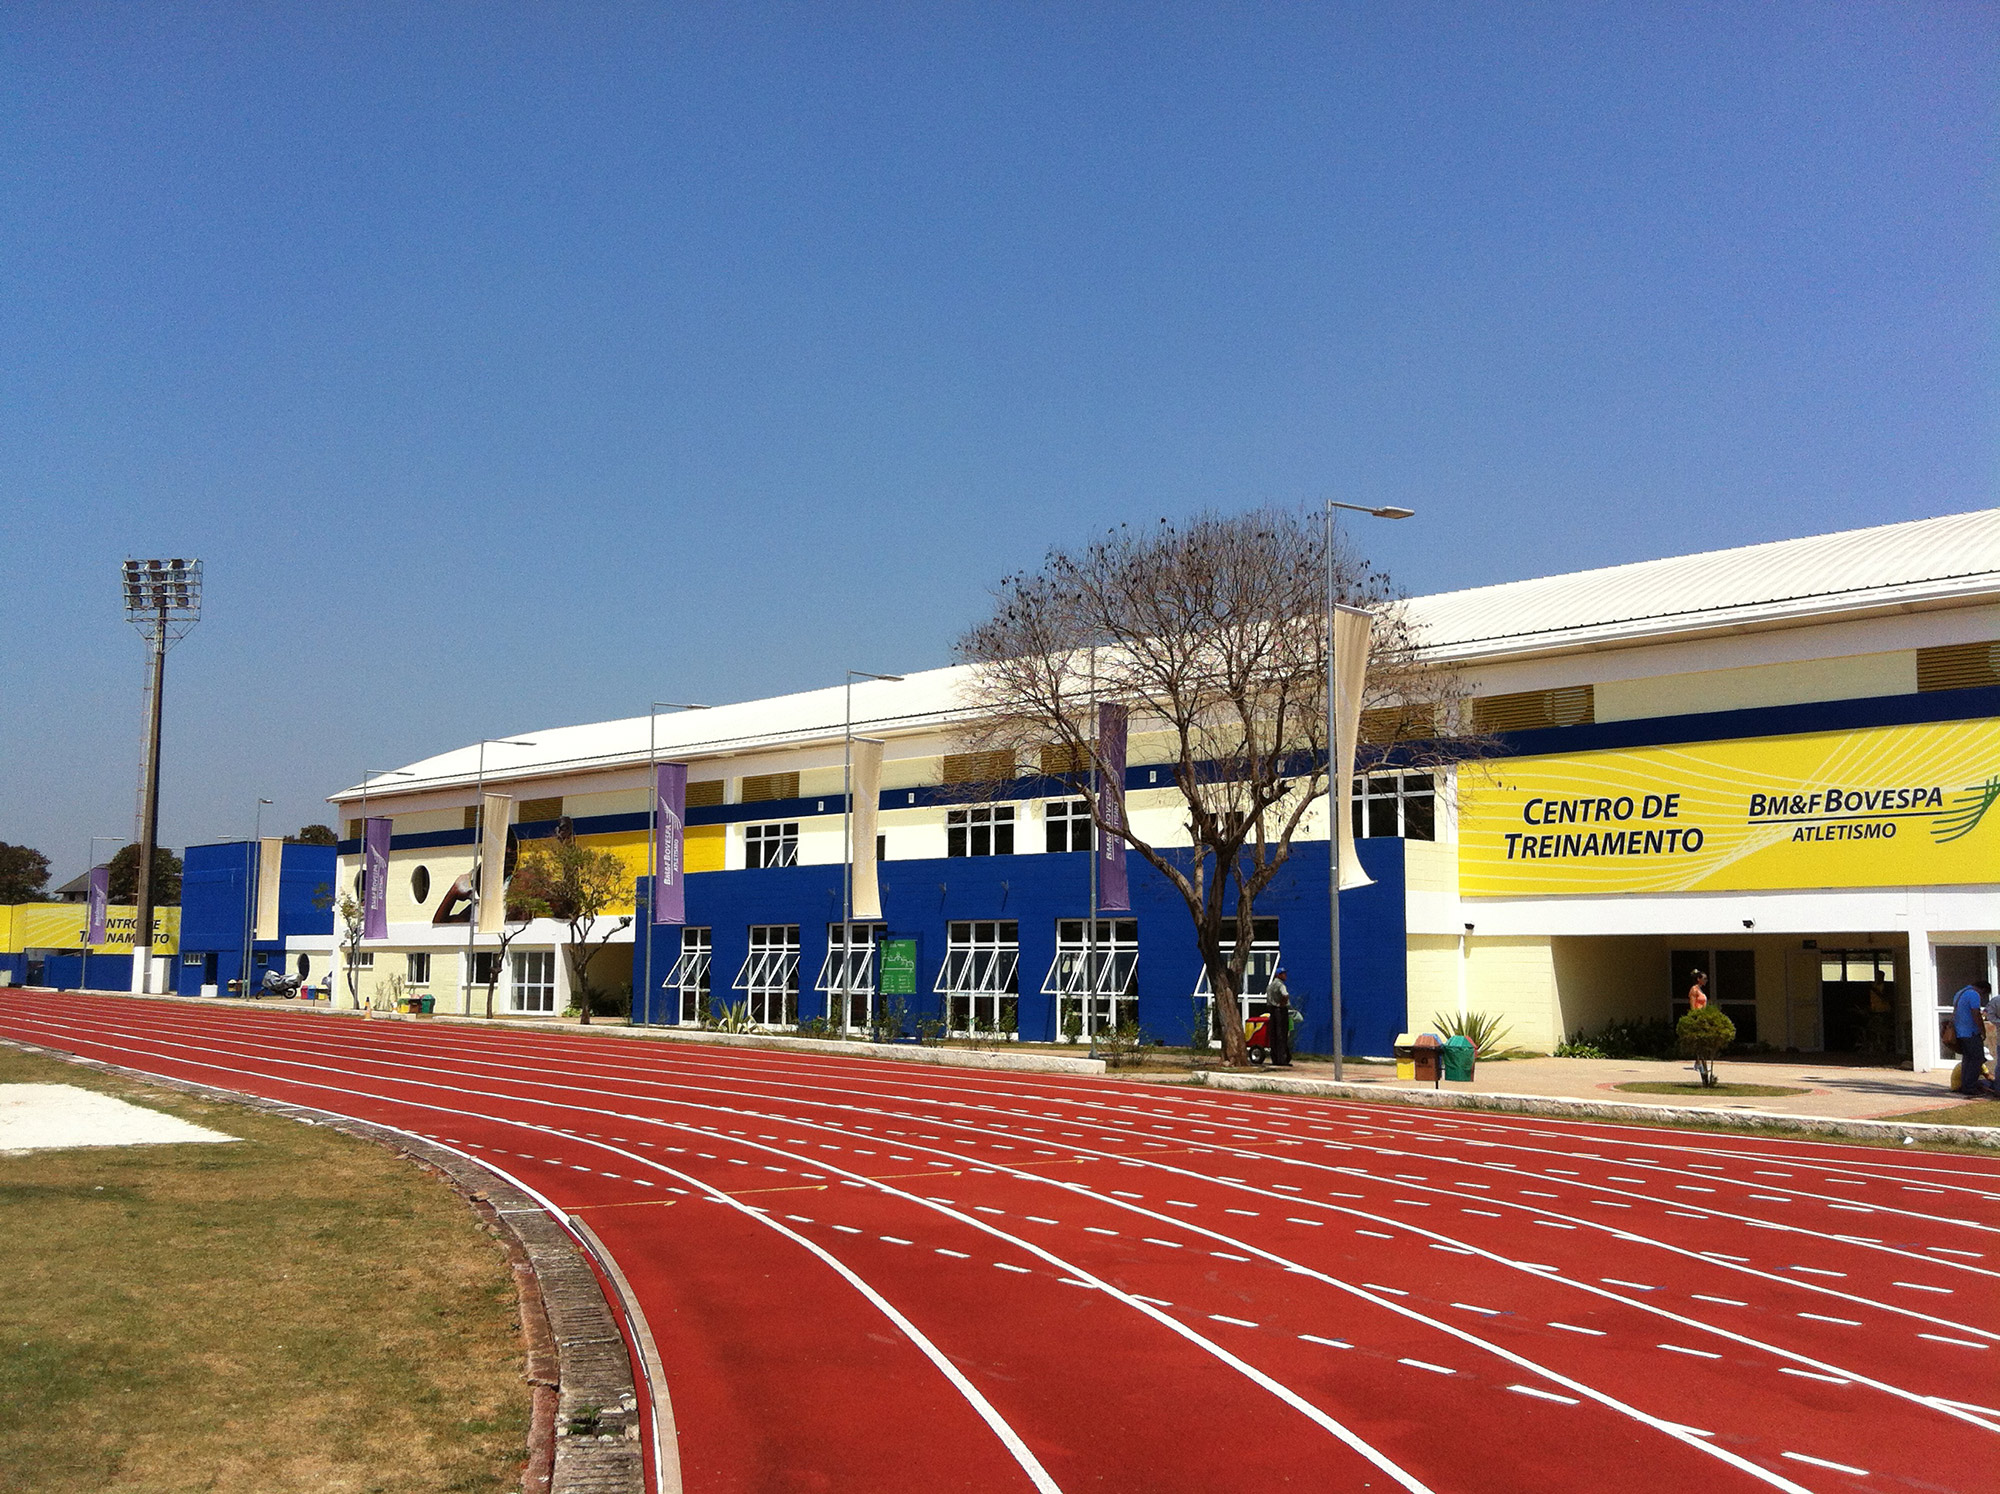 Centro de Treinamento do Clube de Atletismo BM&FBOVESPA